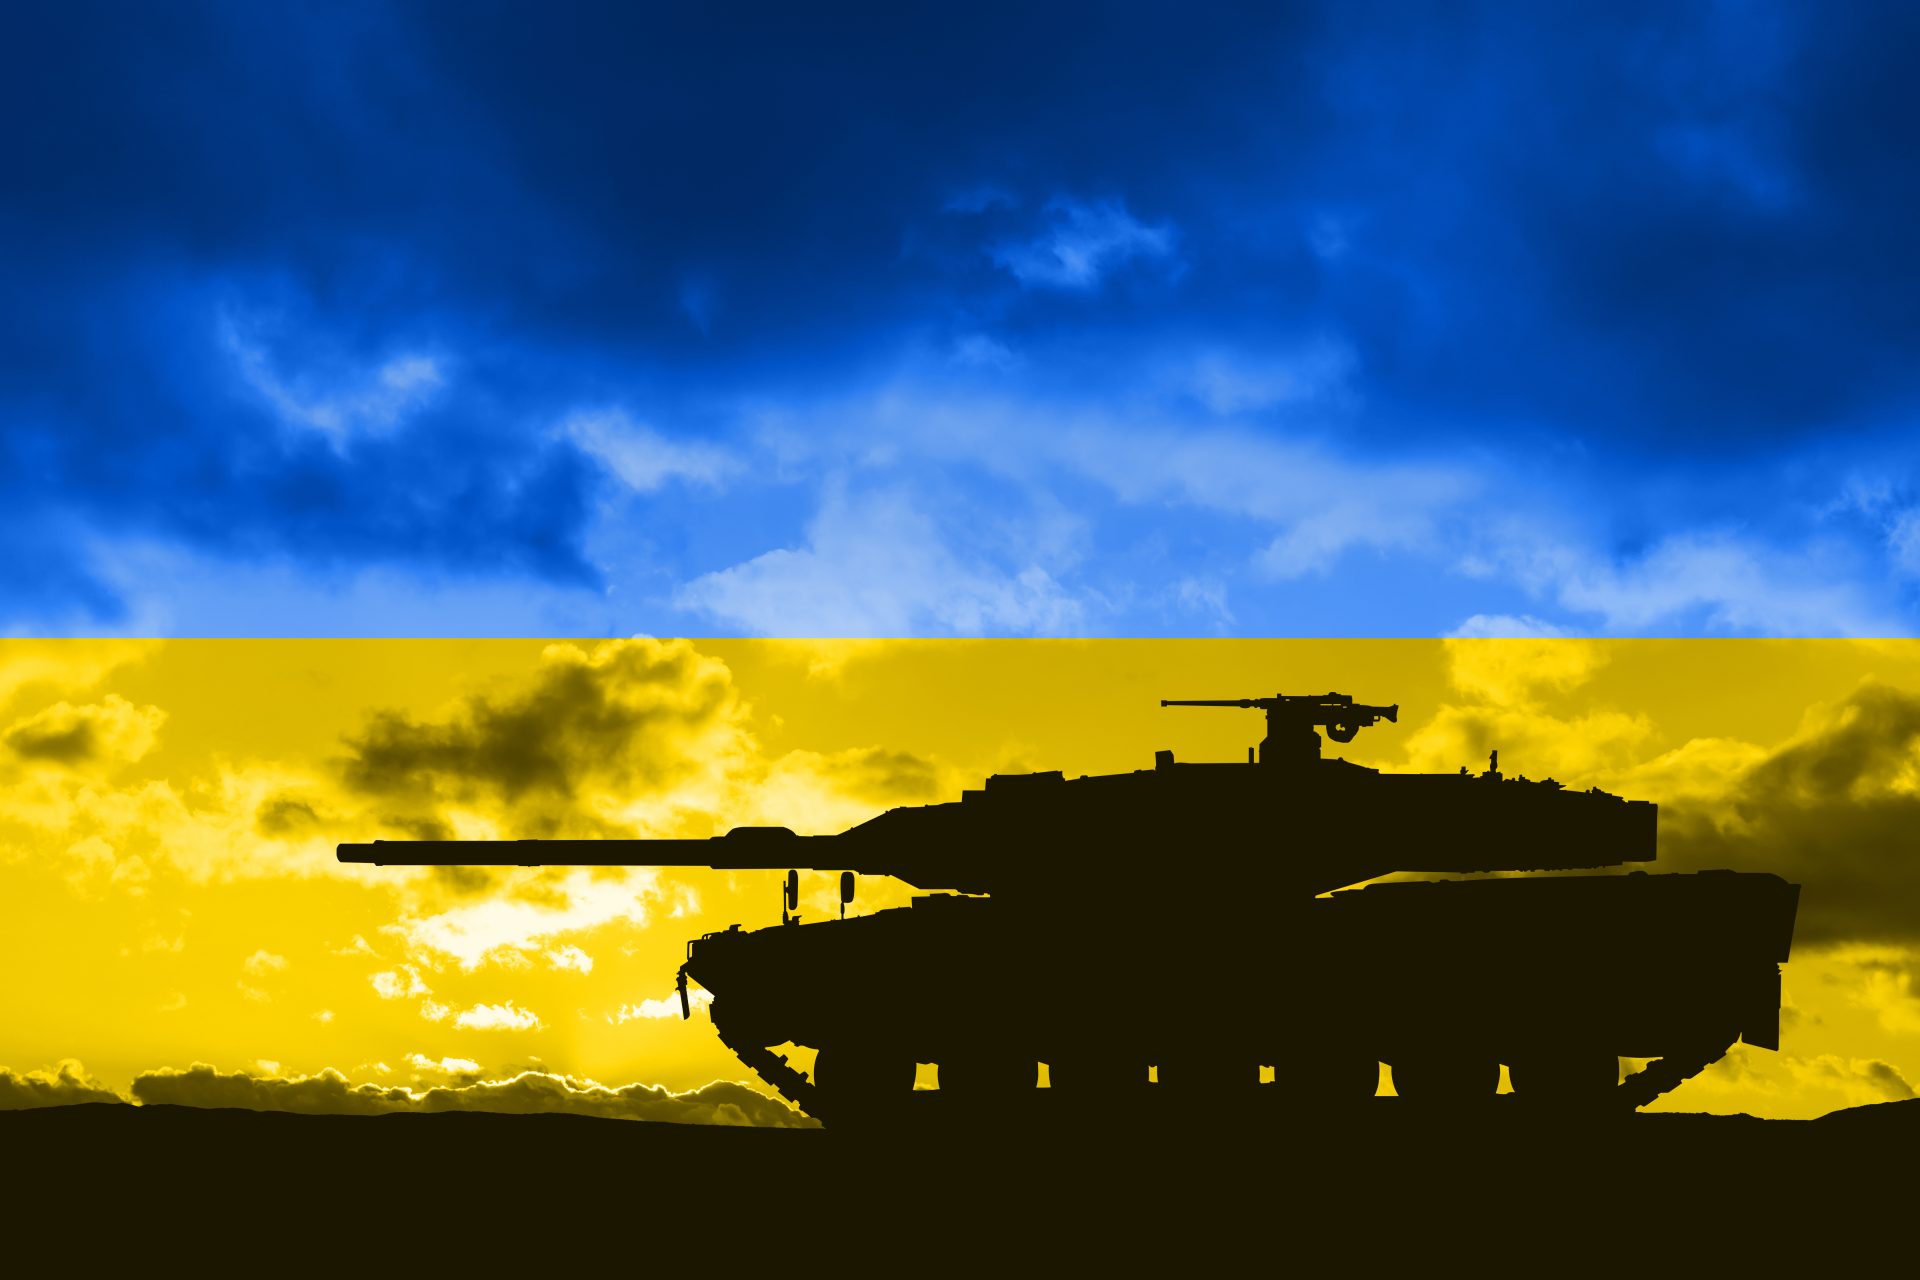 Dieser amerikanische Panzer könnte die Verteidigung Russlands durchbrechen